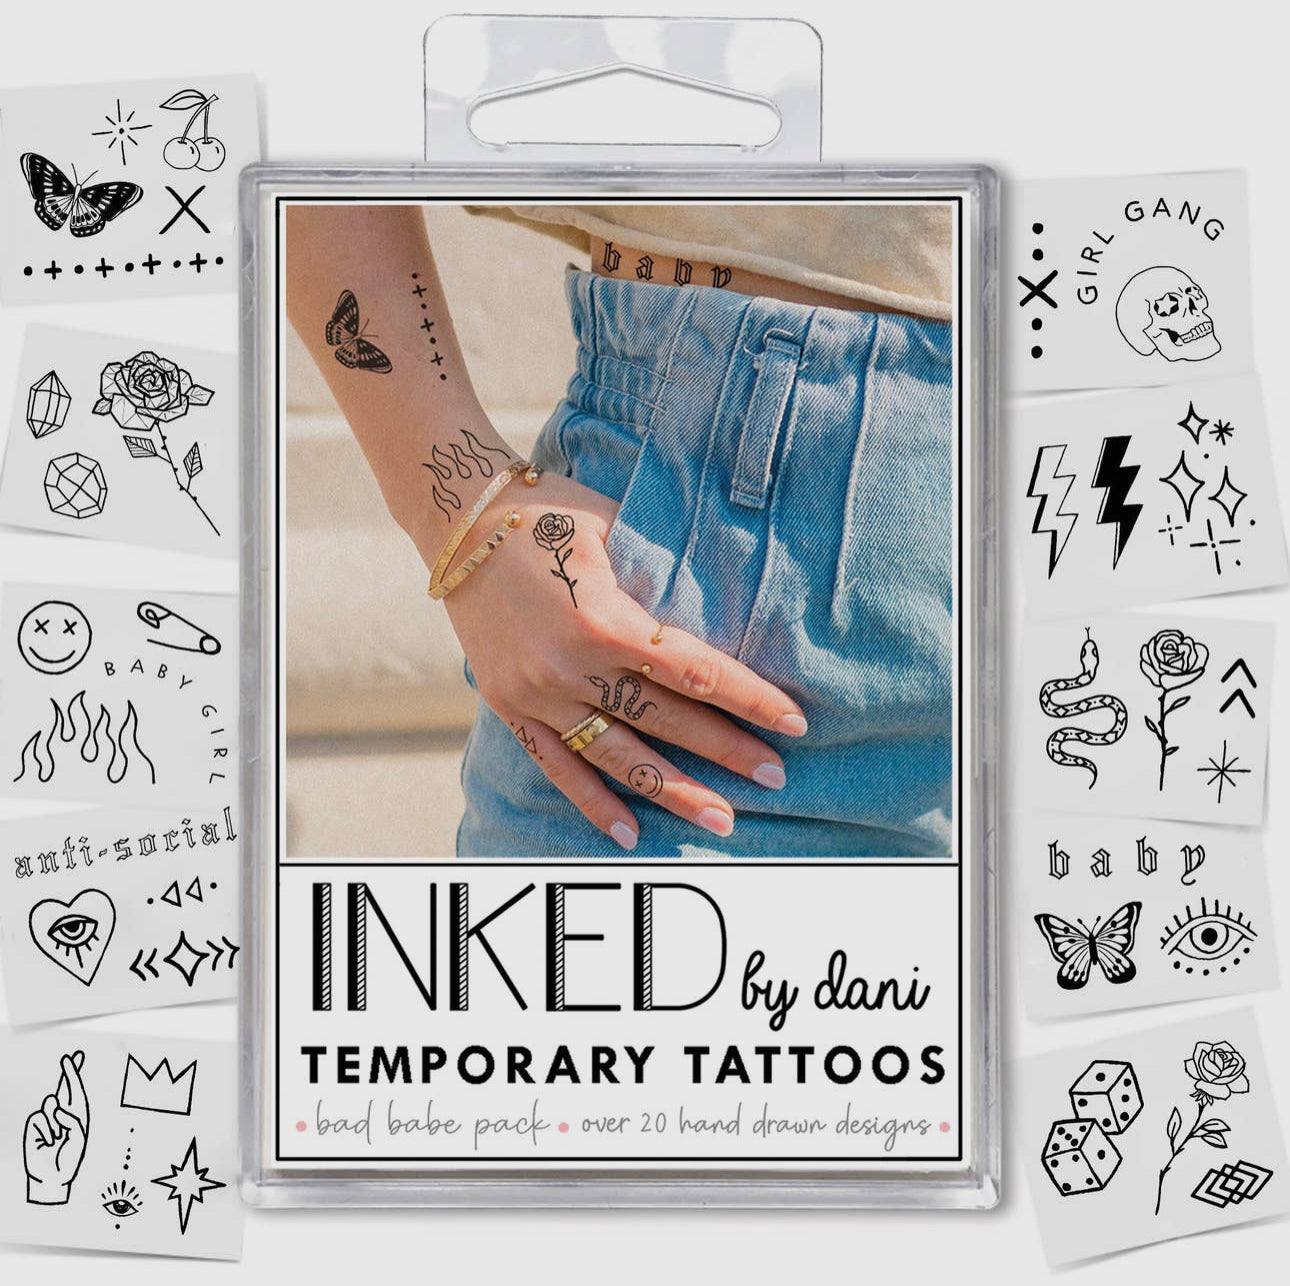 INKED Temporary Tattoos - Bad Babe